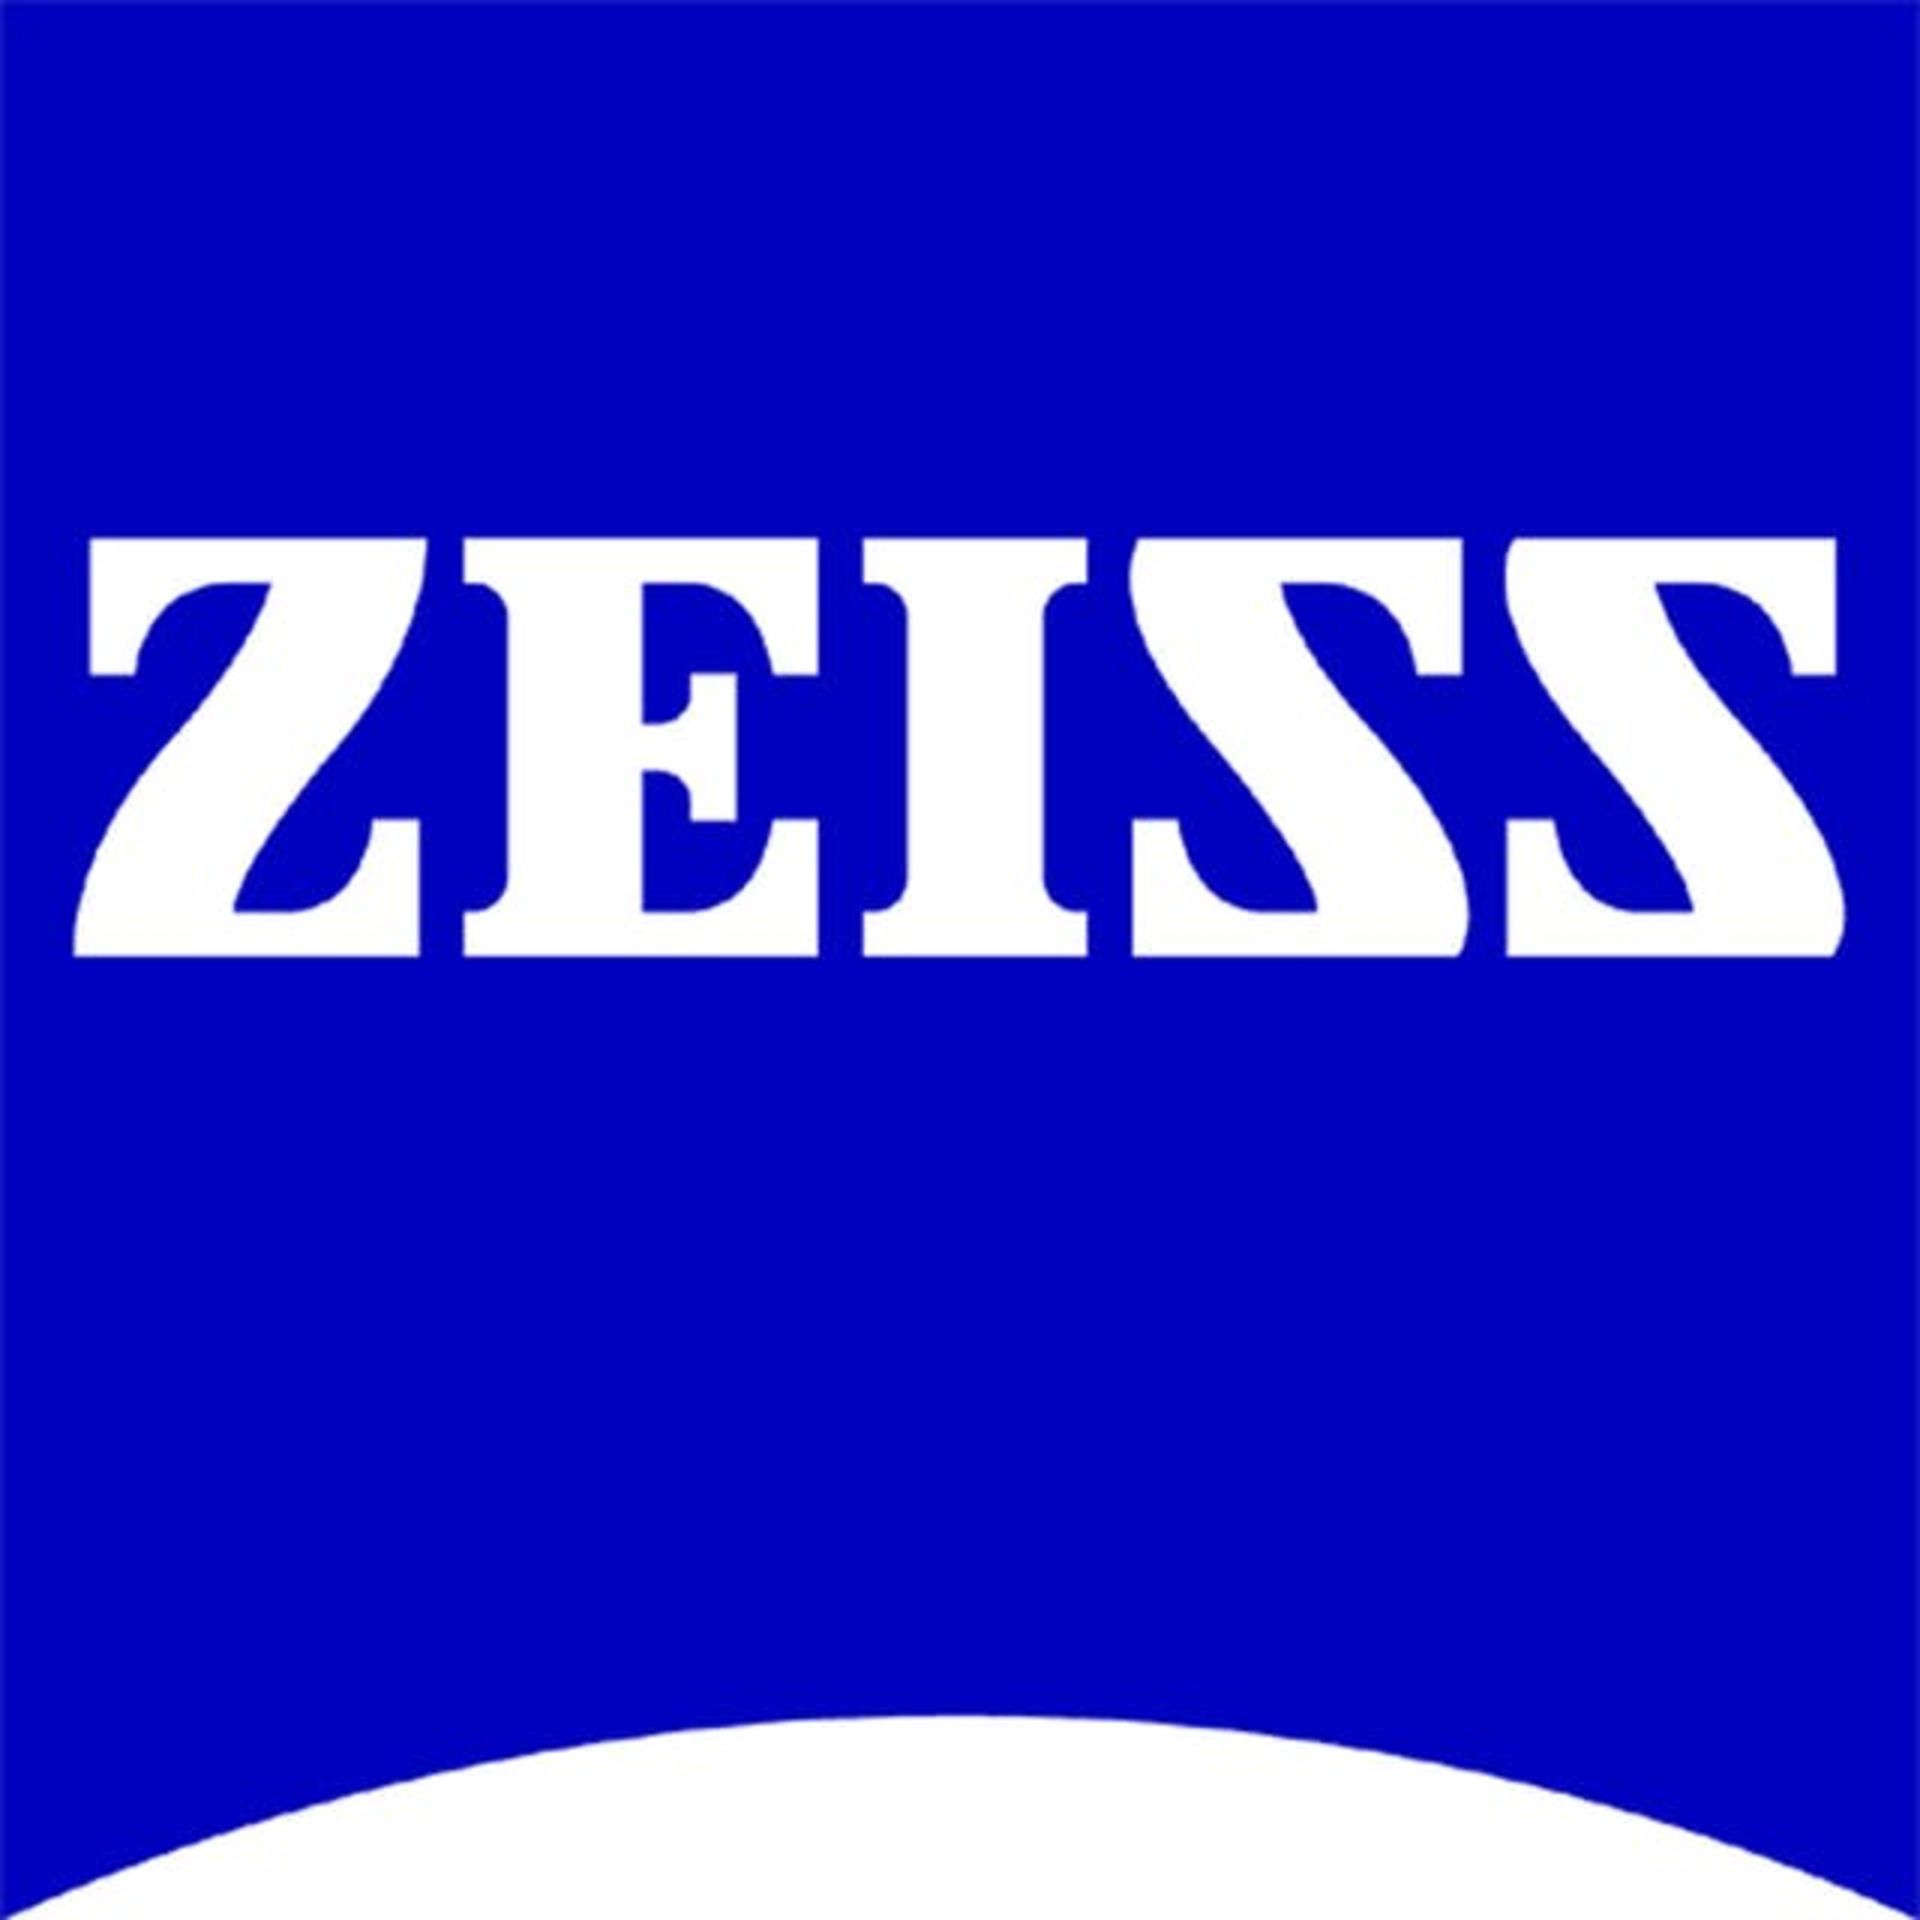 مرجع متخصصين ايران لوگوي كارل زايس / Carl Zeiss